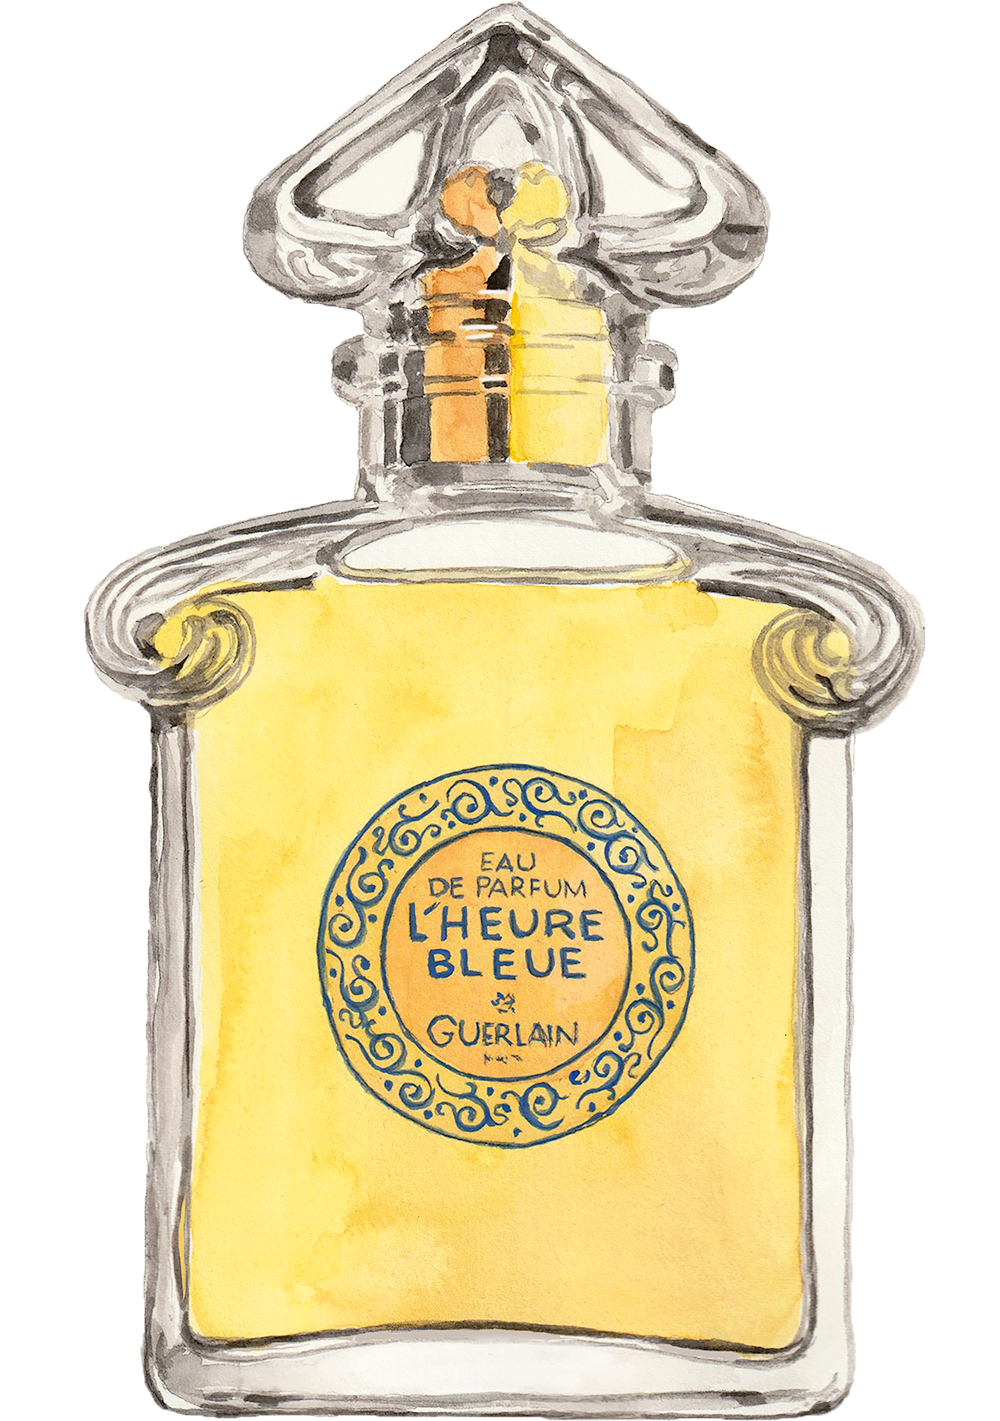 bottle of L'Heure Bleue eau de parfum watercolor